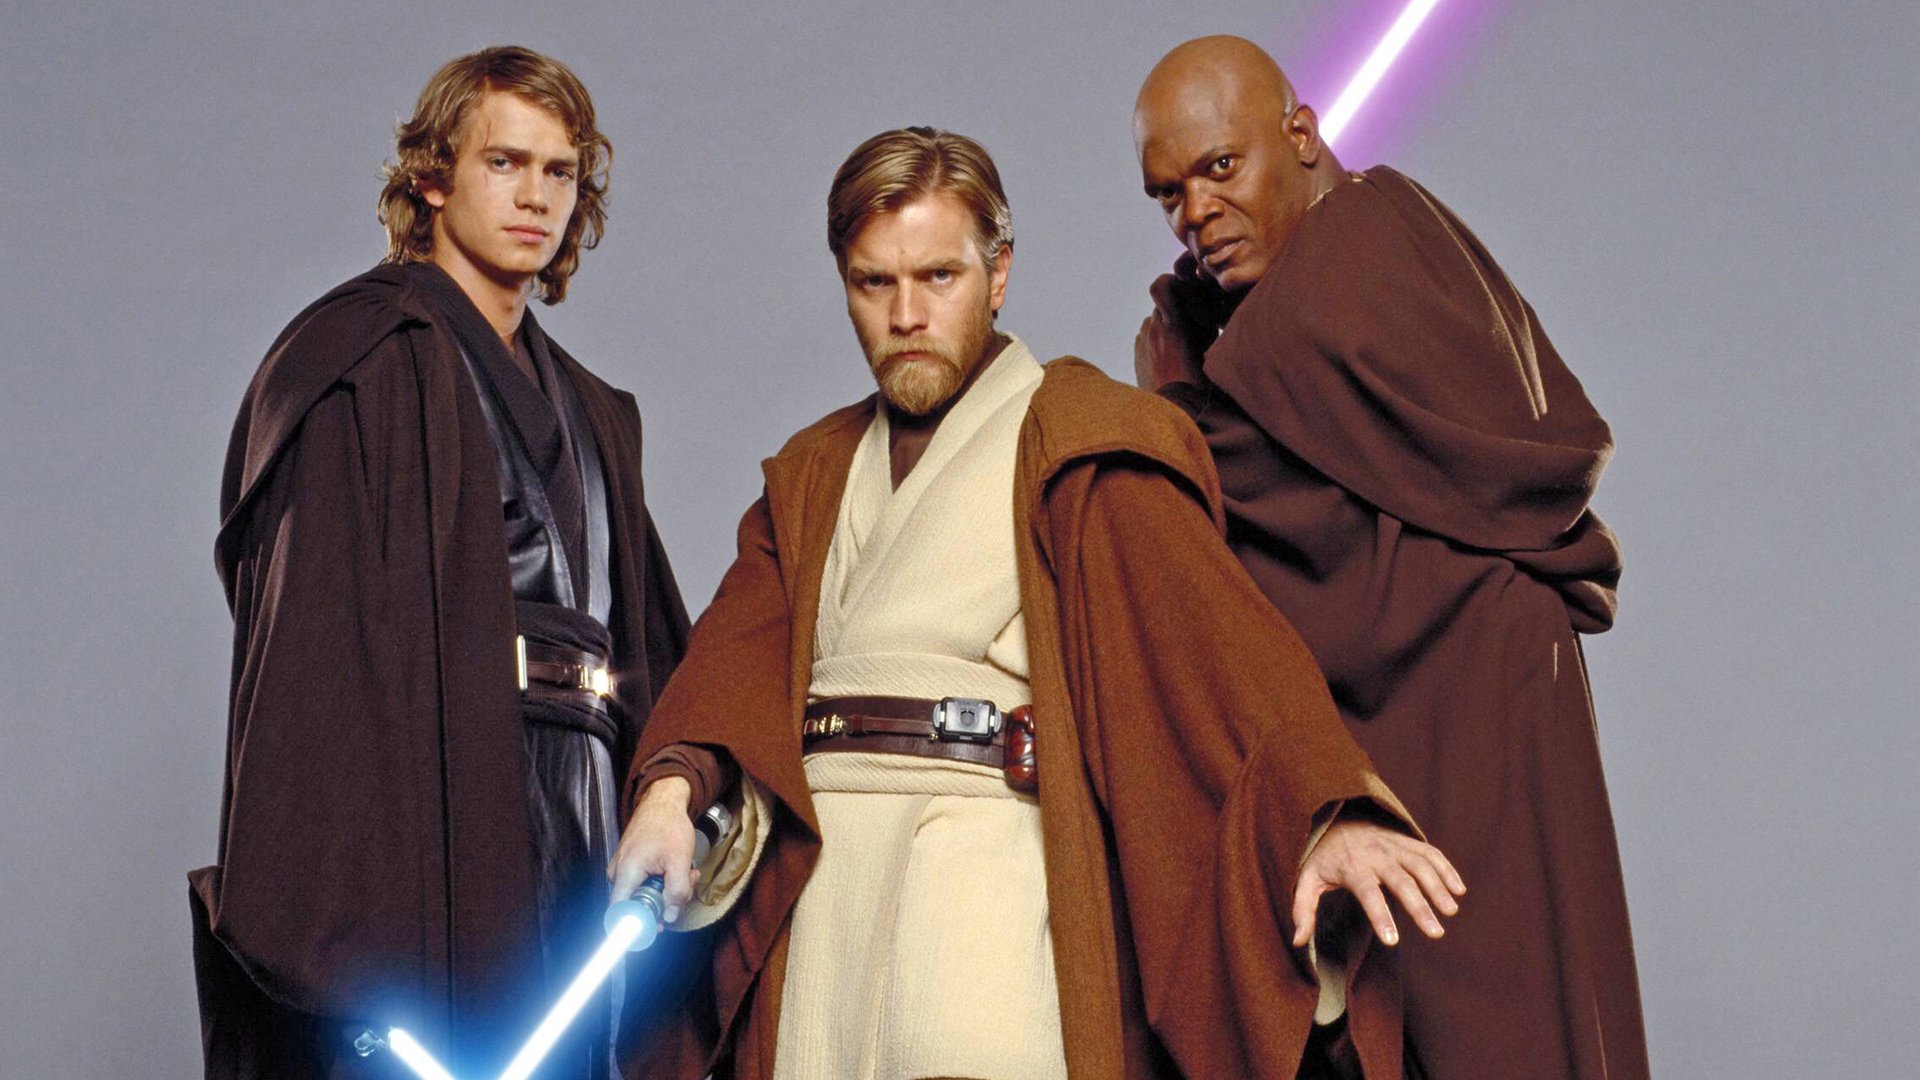 #„Star Wars“-Star fällte Darth-Vader-Entscheidung – obwohl George Lucas erst dagegen war